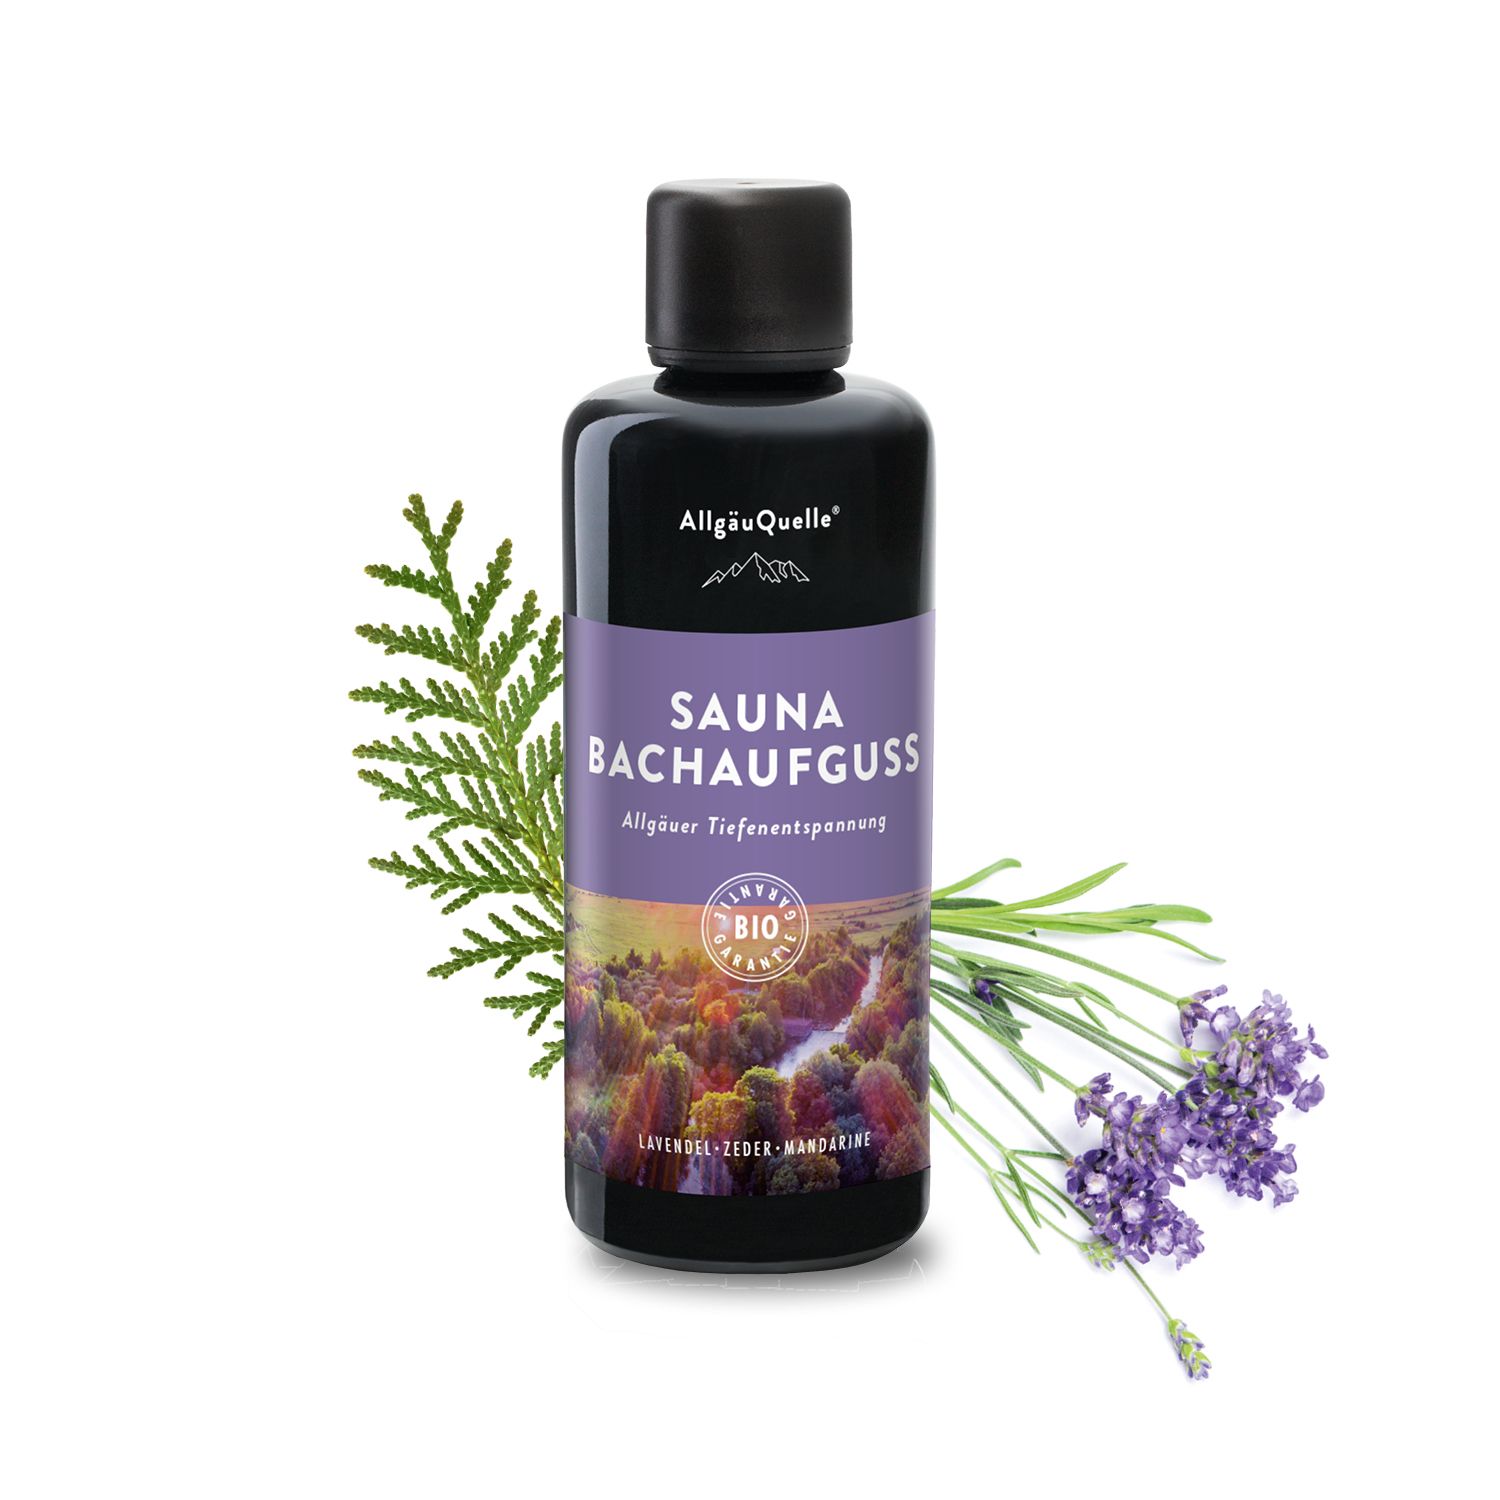 Allgäuquelle Bio Saunaaufguss Aufgussmittel ätherische Sauna-Öle Lavendel Zeder Mandarine Saunaduft